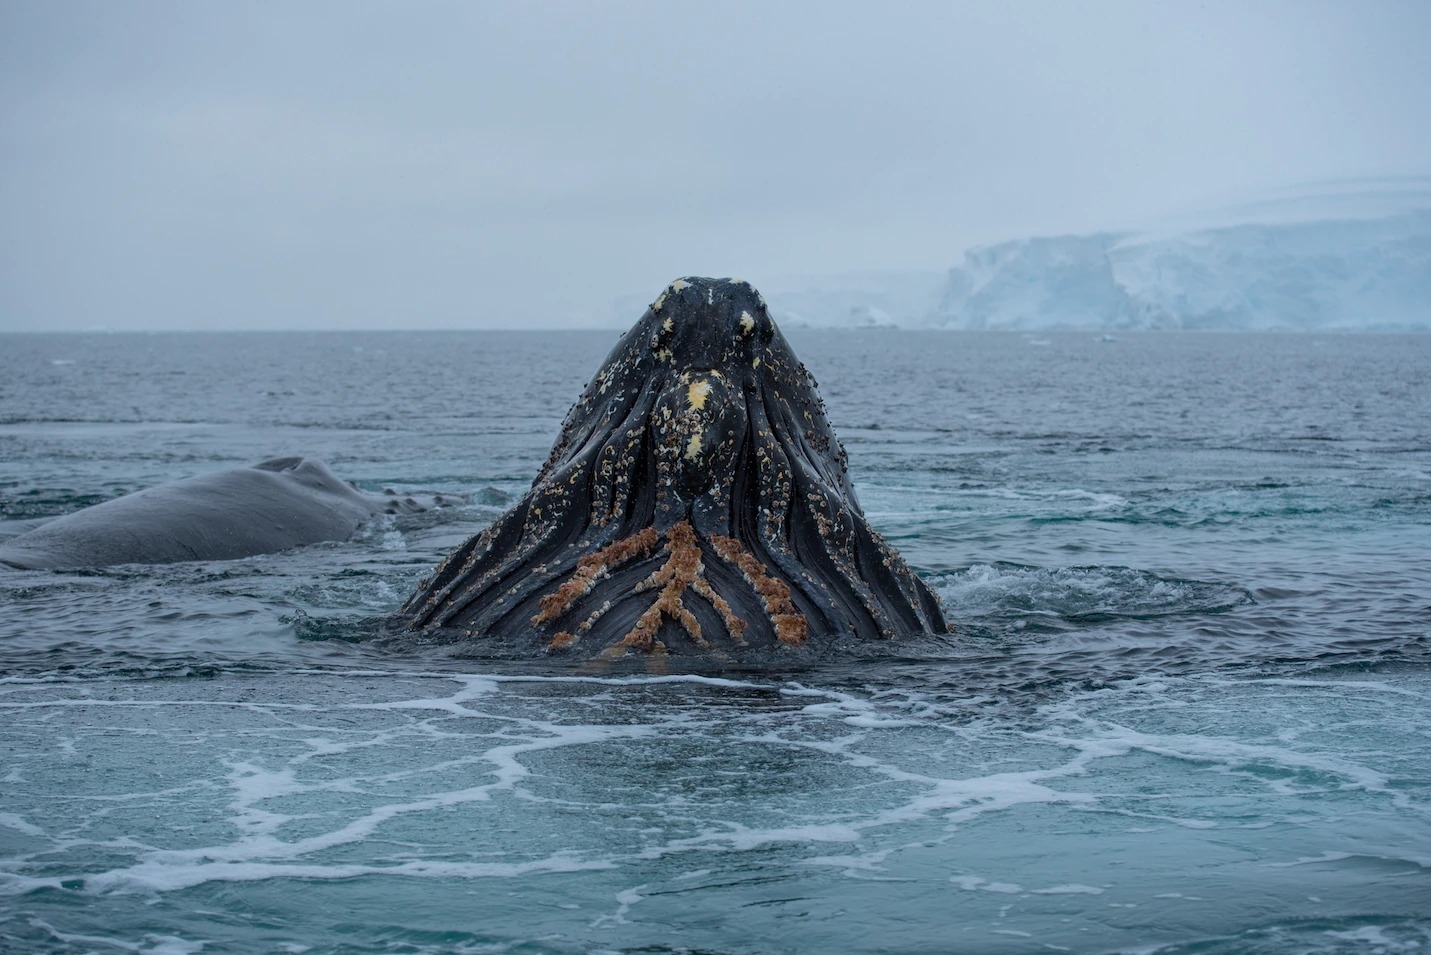 這項近期研究標記的一頭座頭鯨從水中衝出來進食。座頭鯨的嘴裡有鯨鬚板，會把微小獵物過濾出來。PHOTOGRAPH BY MATTHEW SAVOCA 